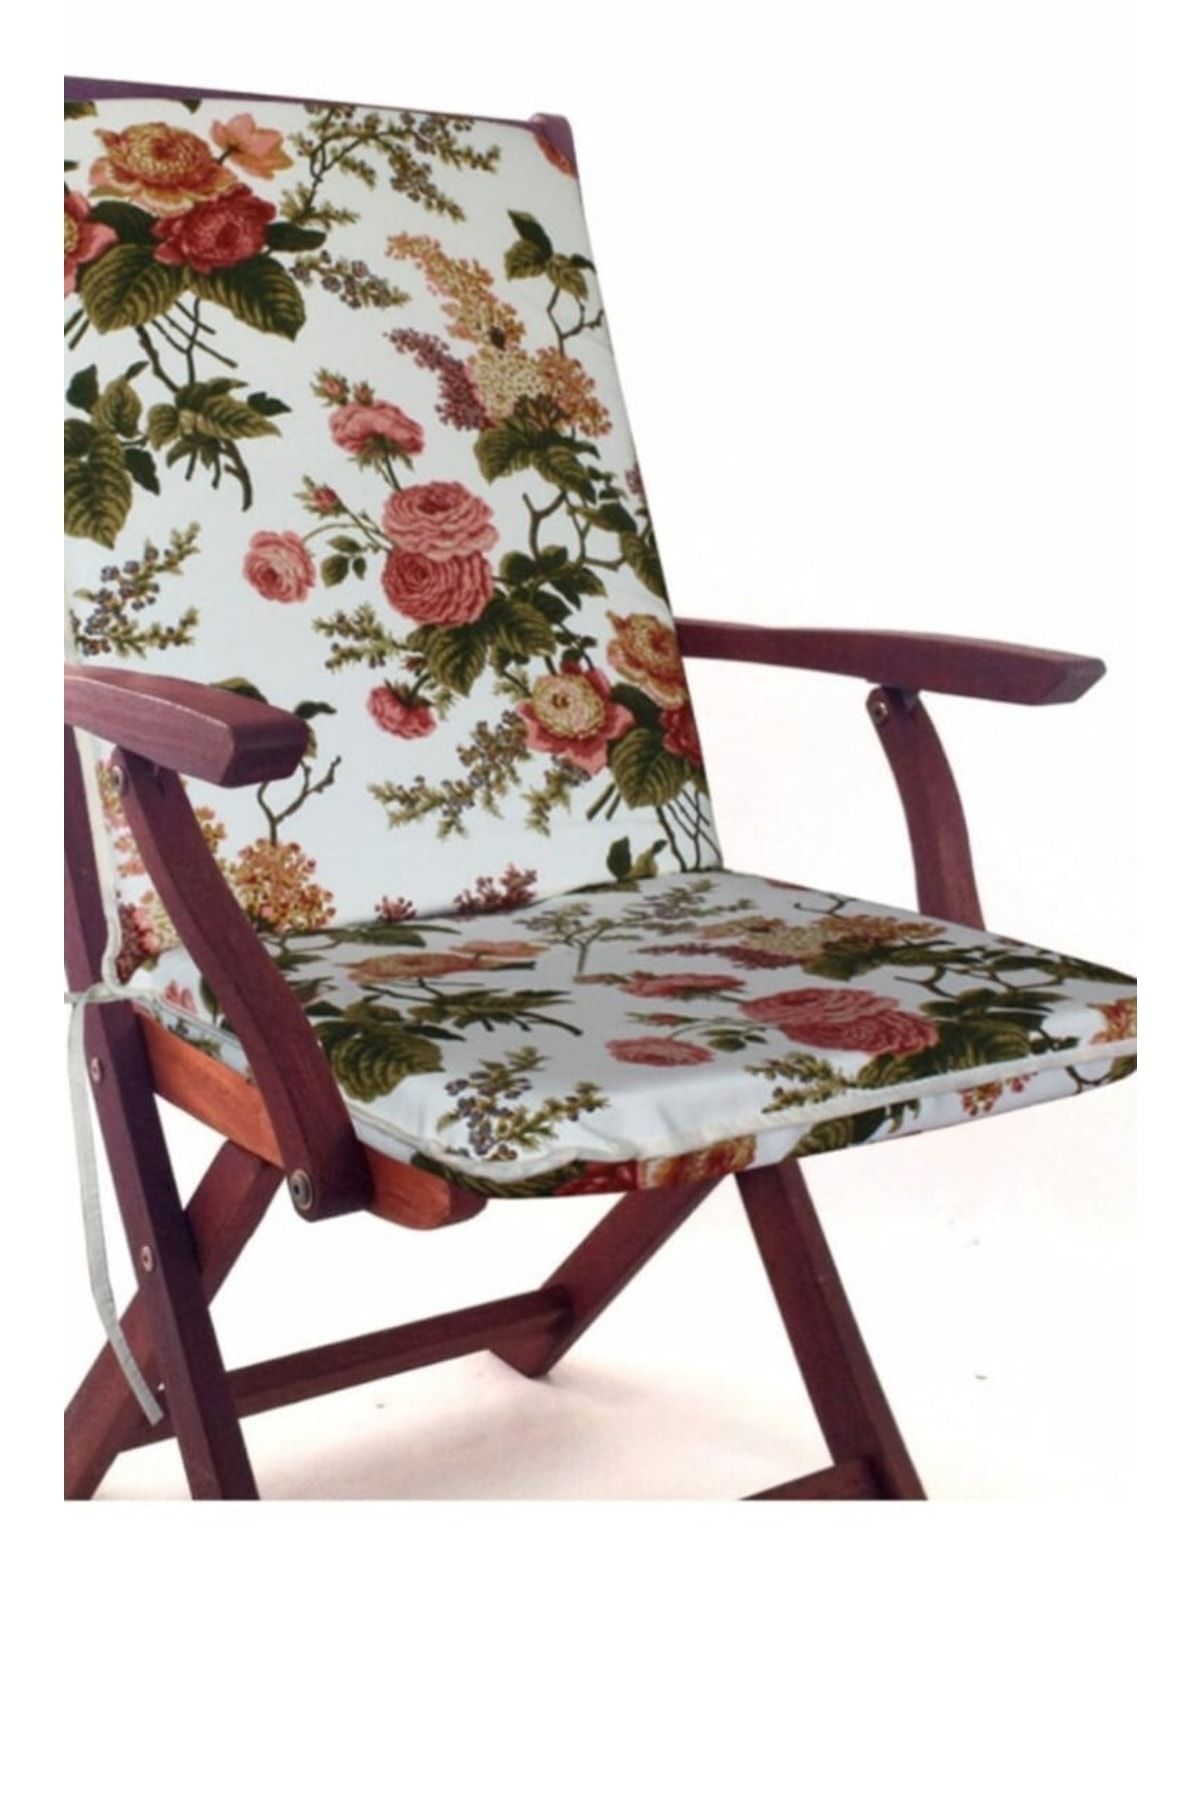 mer-tim ezberbozan ev tekstili Mer-tim Bahçe Balkon Salon Çiçek Desenli Sandalye Minderi 1 Adet